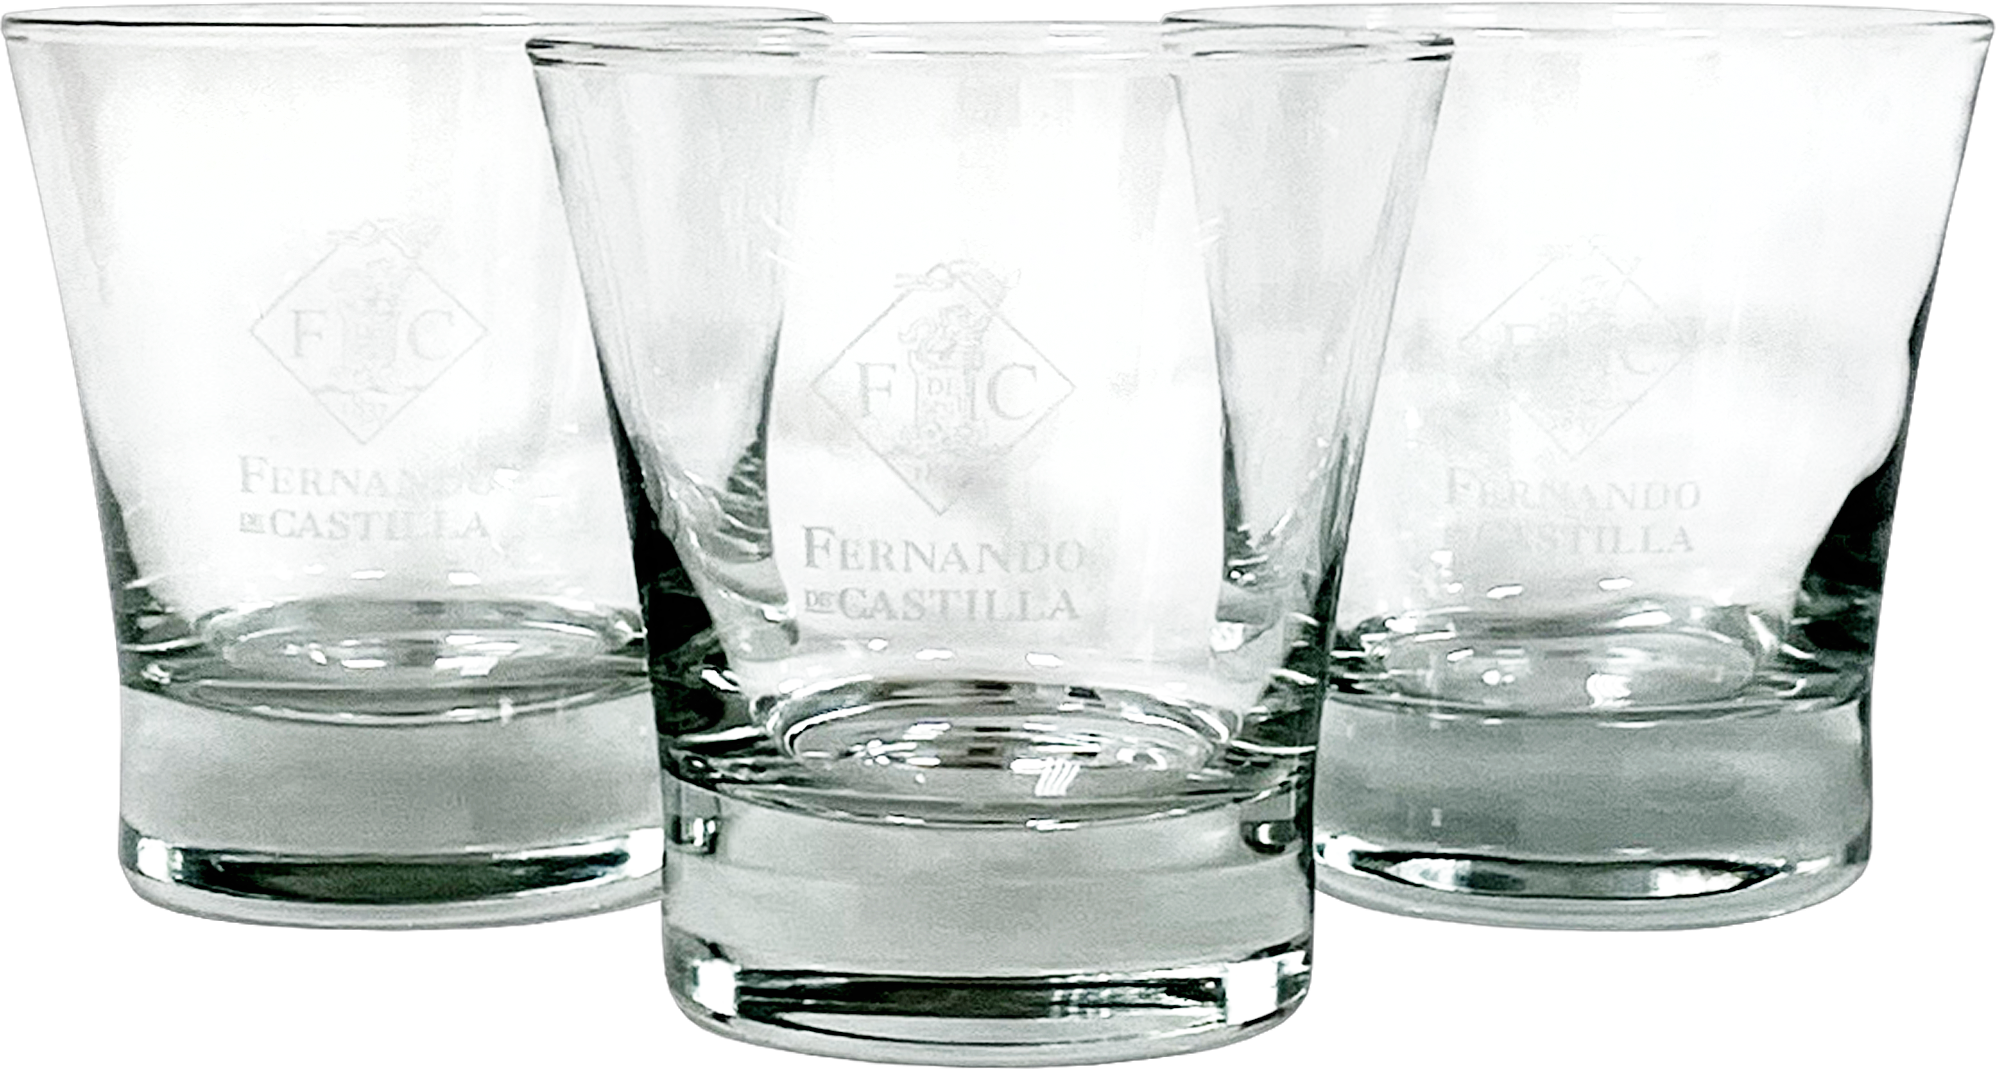 Бокалы Fernando de Castilla, set of 6 glasses